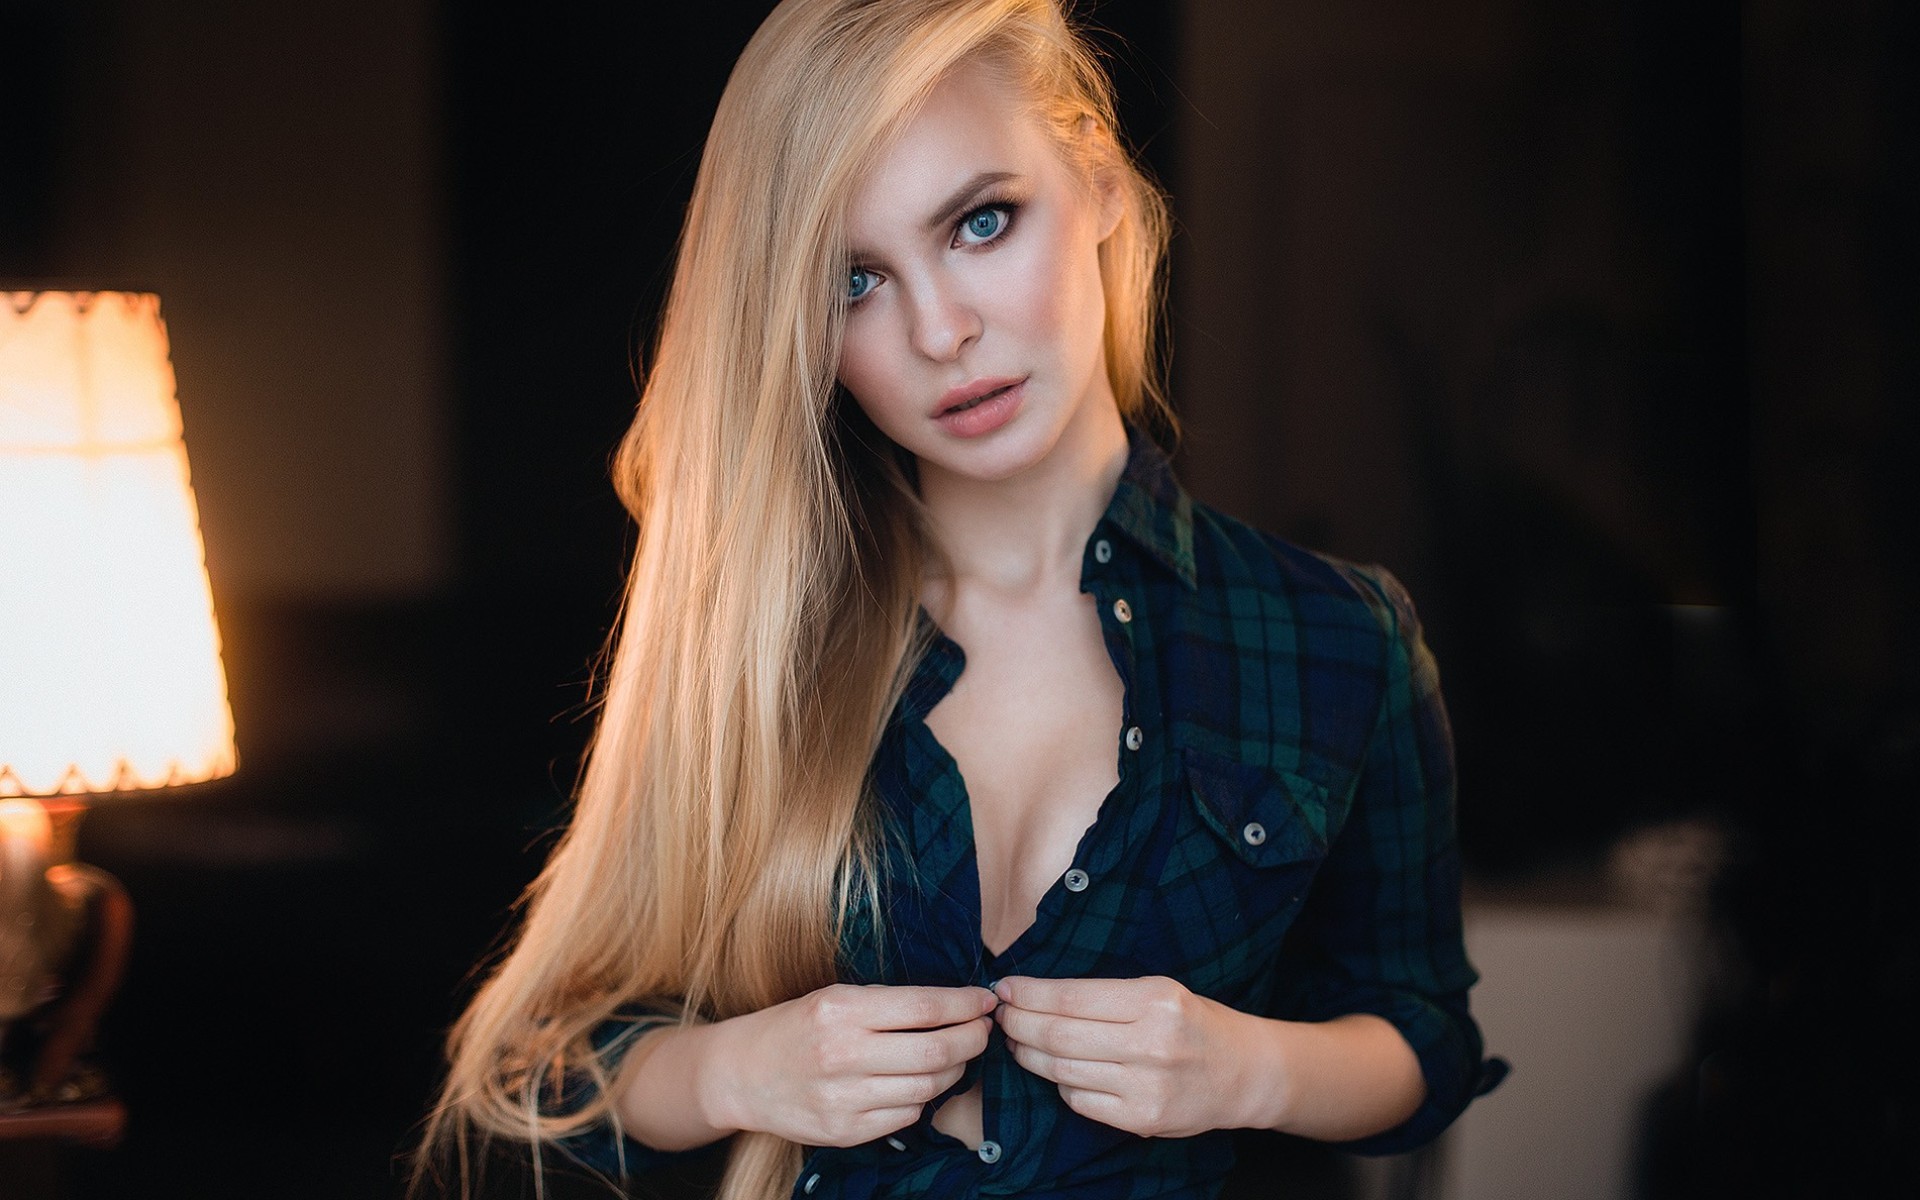 Victoria Pichkurova